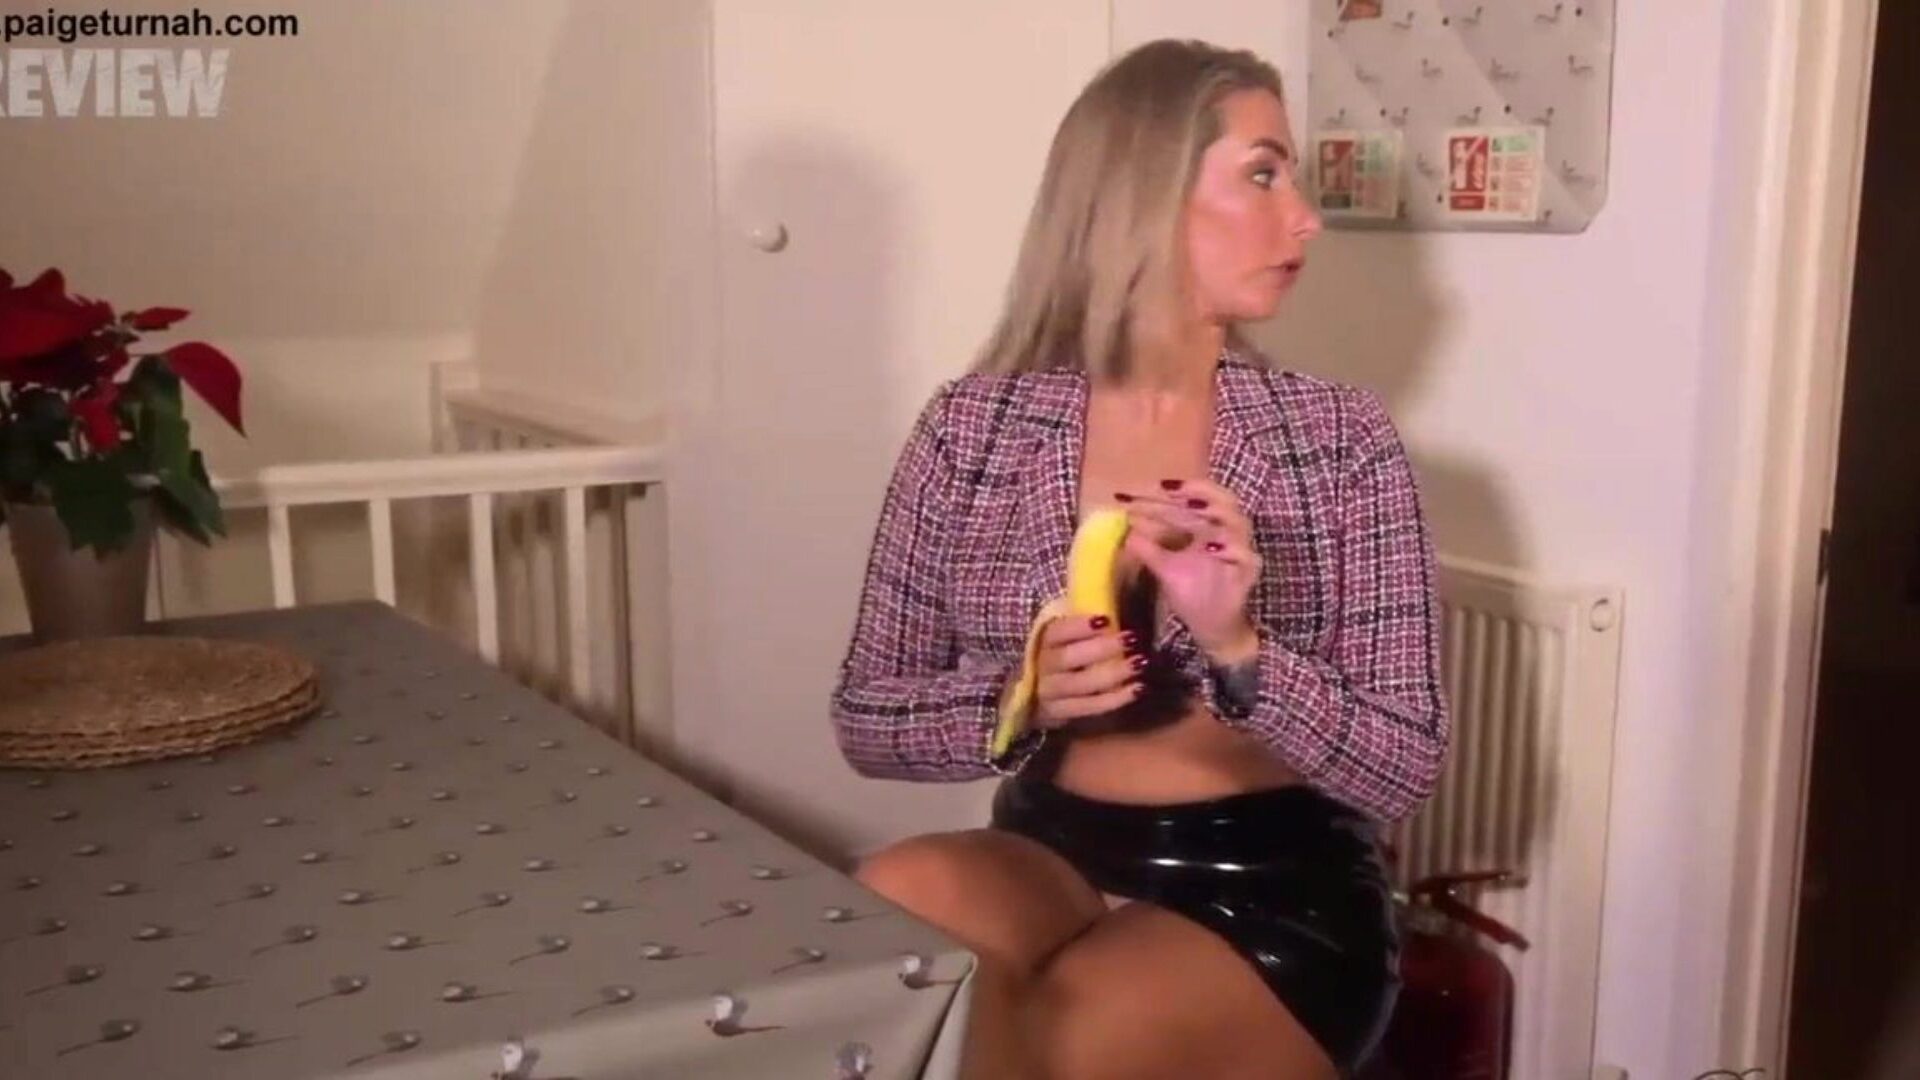 Britanska beba Paige Turnah je na pauzi za ručak i zadirkuje je s oralnom uslugom od banane i gadnim ispustima